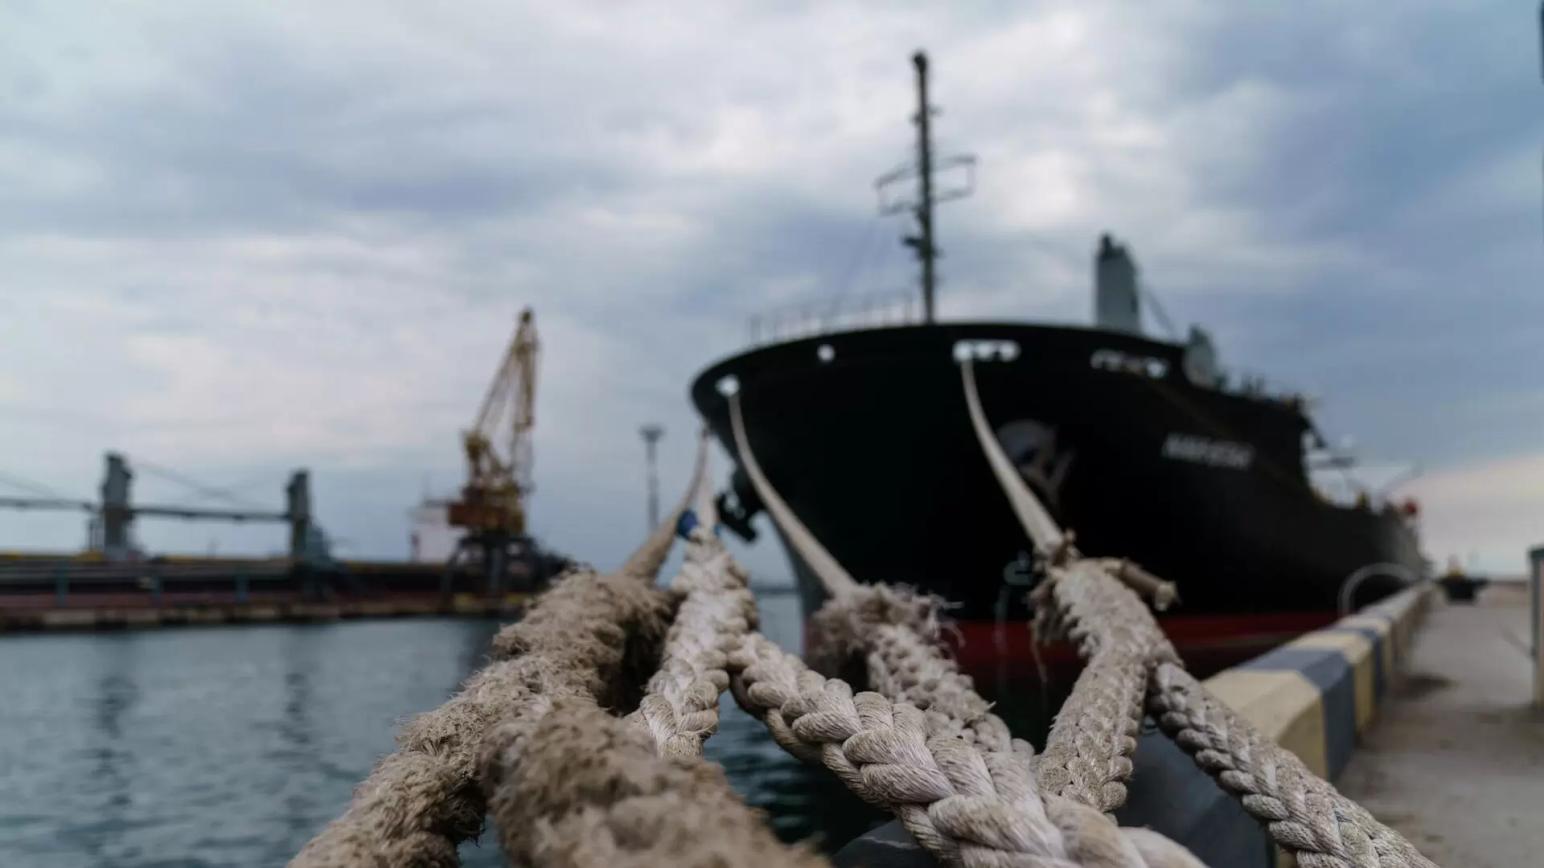 Зерновая сделка: на 600 судов из Украины вышло 1 судно из России с удобрениями